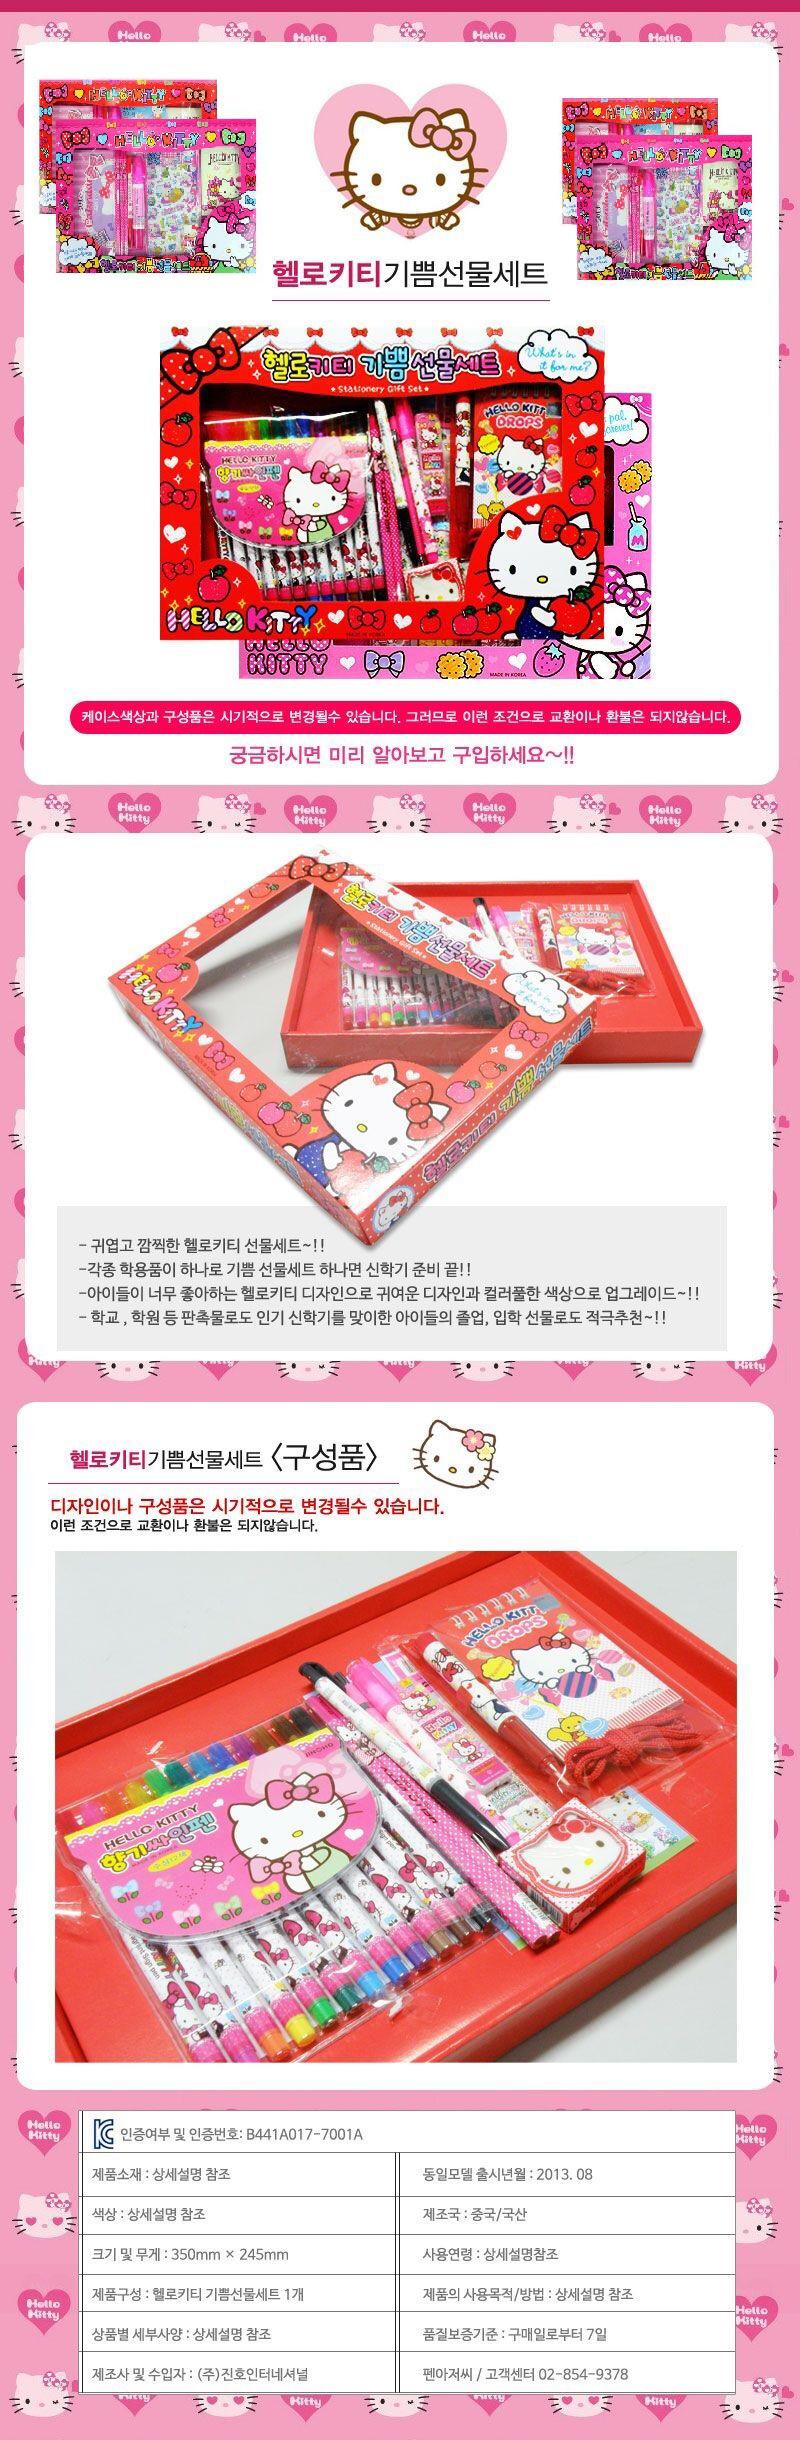 韩国进口正品HELLO KITTY凯蒂猫可爱卡通图案文具套装礼盒417791